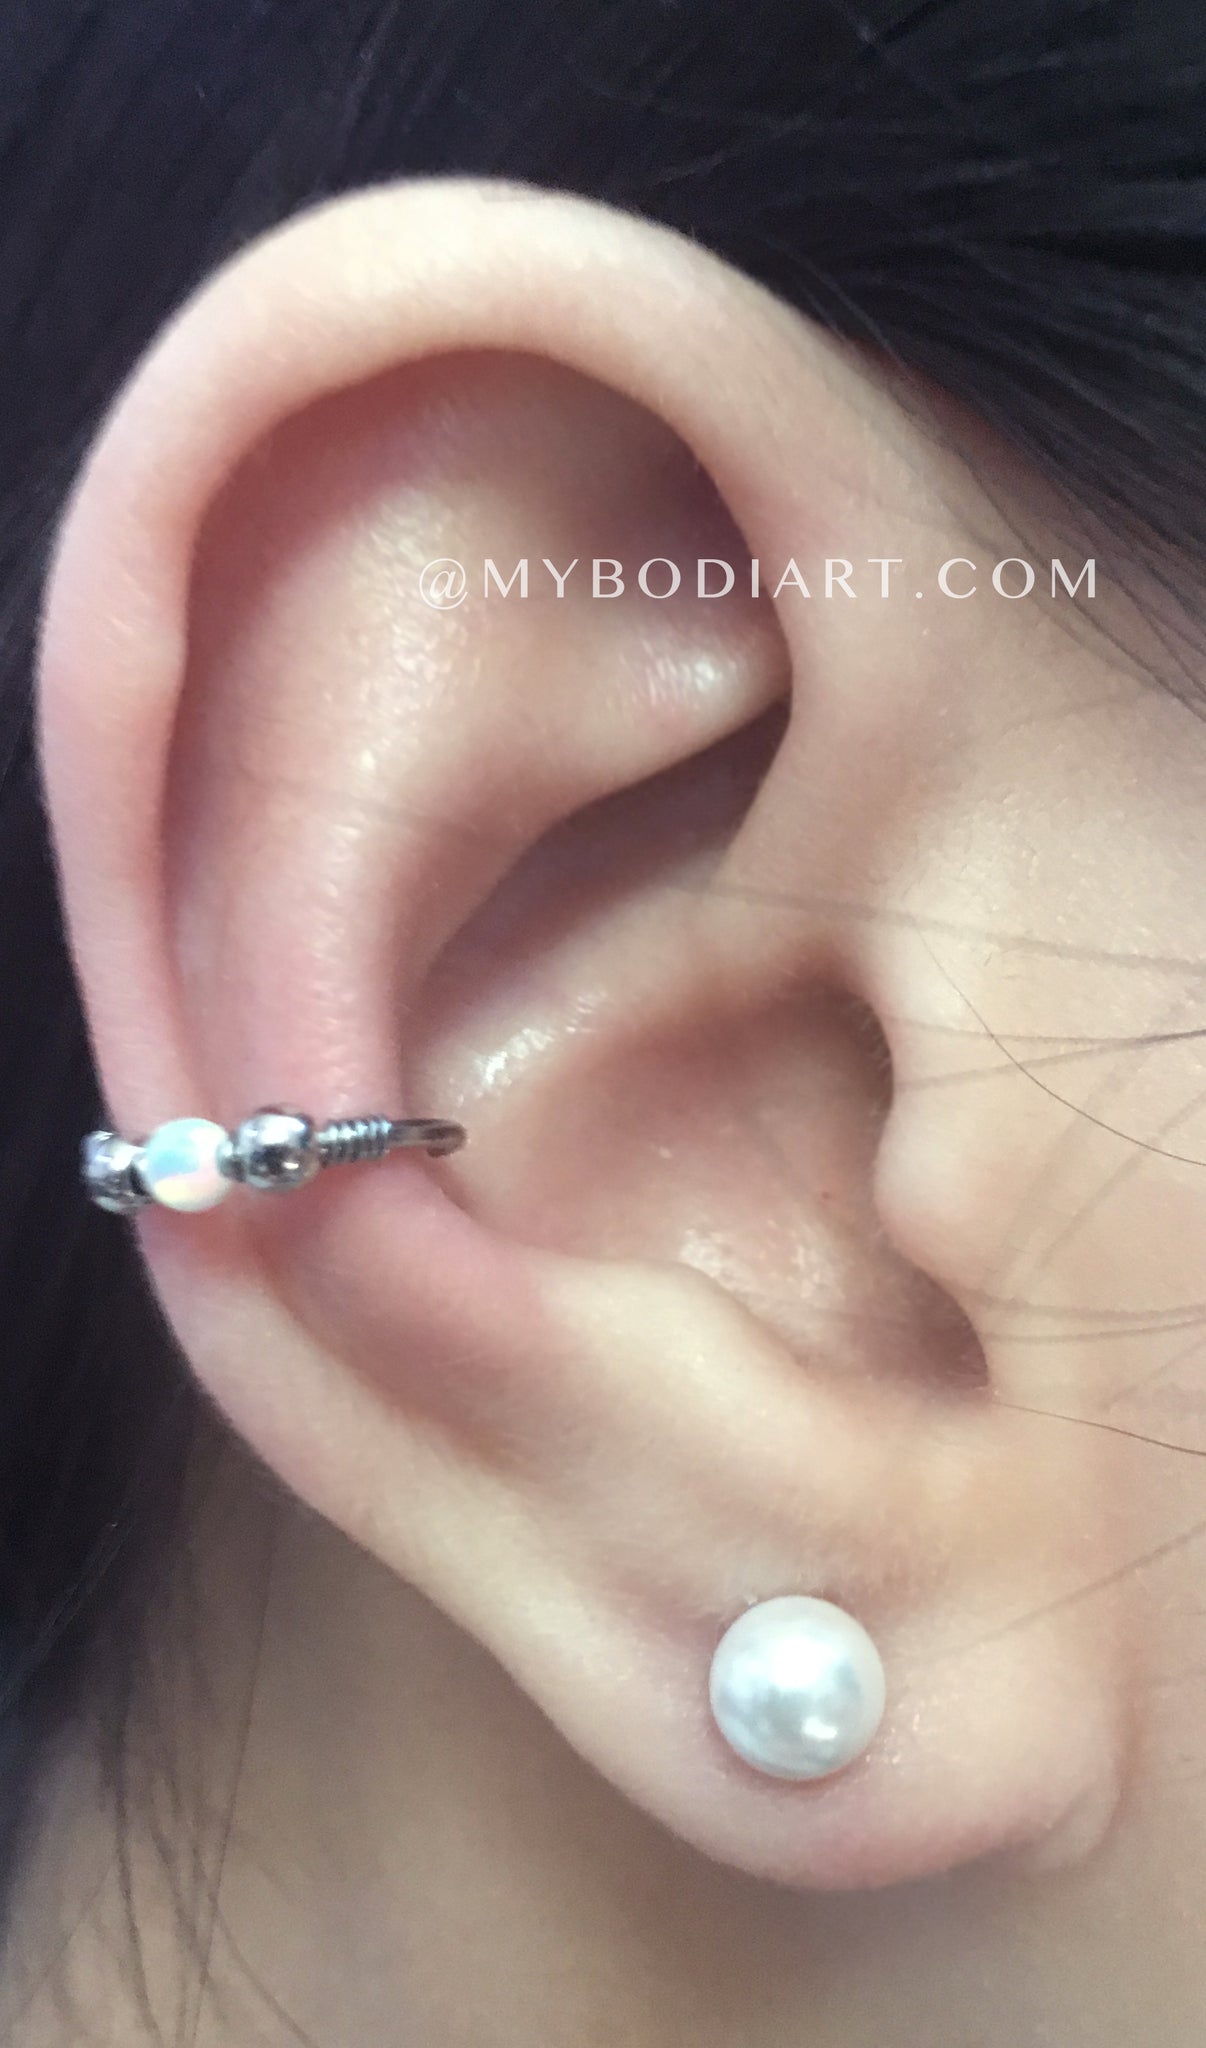 Feminine Classy Ear Piercing Ideas - Opal Conch Earring Ring Hoop - Pearl Ear Lobe Studs - www.MyBodiArt.com